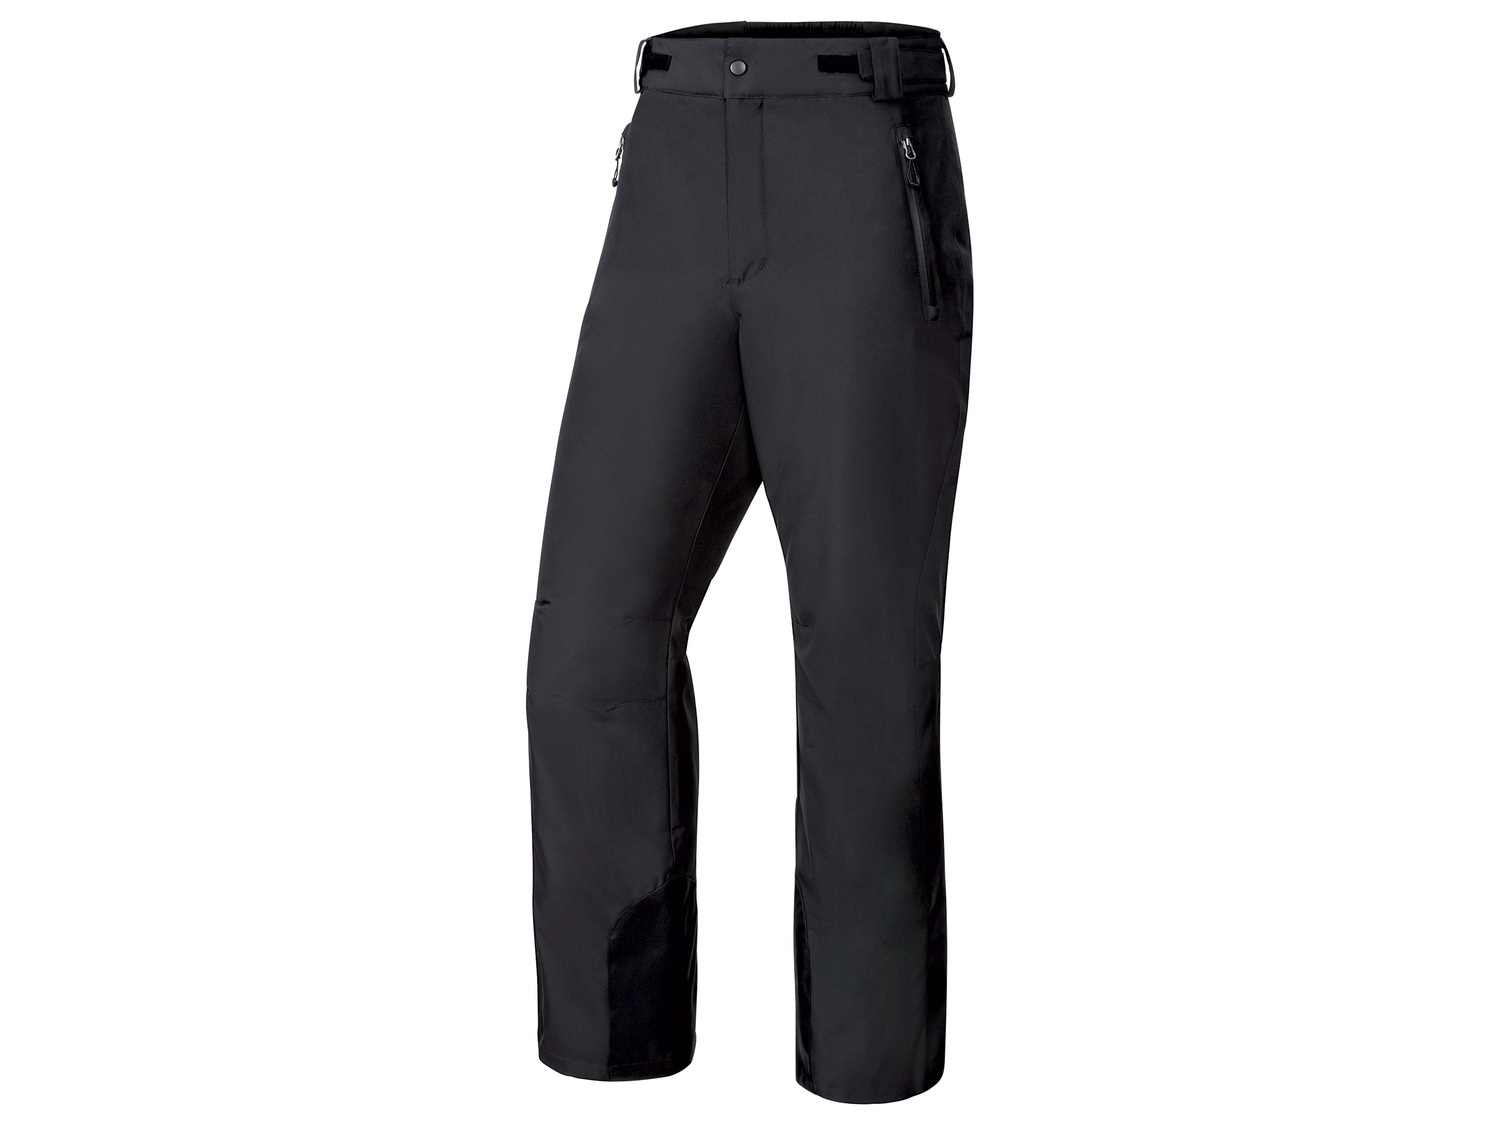 Pantalon de ski homme , le prix 17.99 € 
- Du 38 au 48 selon modèle
- Ex. 100 ...